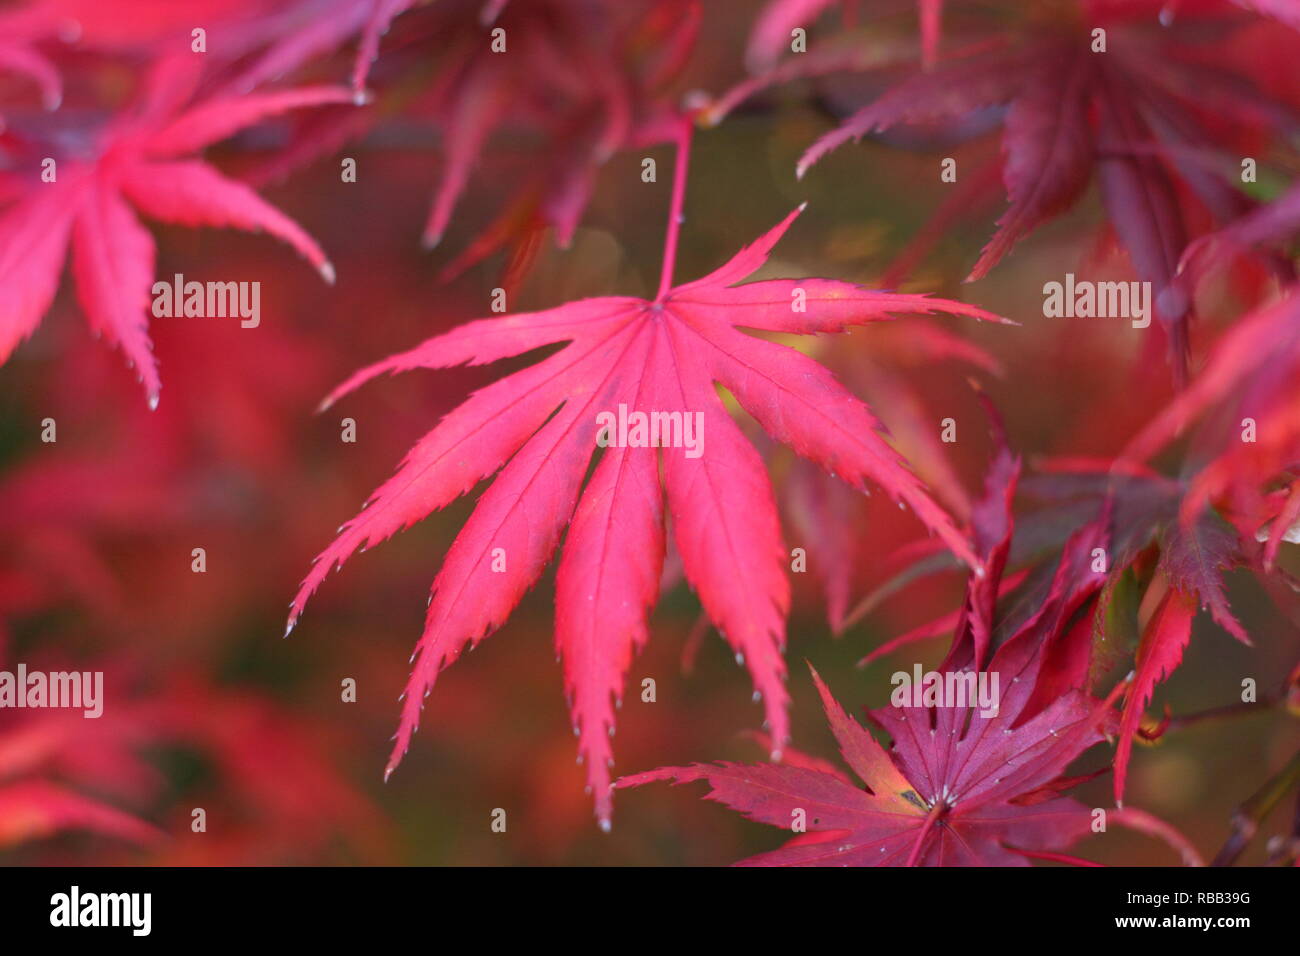 Acer palmatum 'Trompenburg' affichage rouge vibrant feuillage de l'automne, octobre, UK Banque D'Images